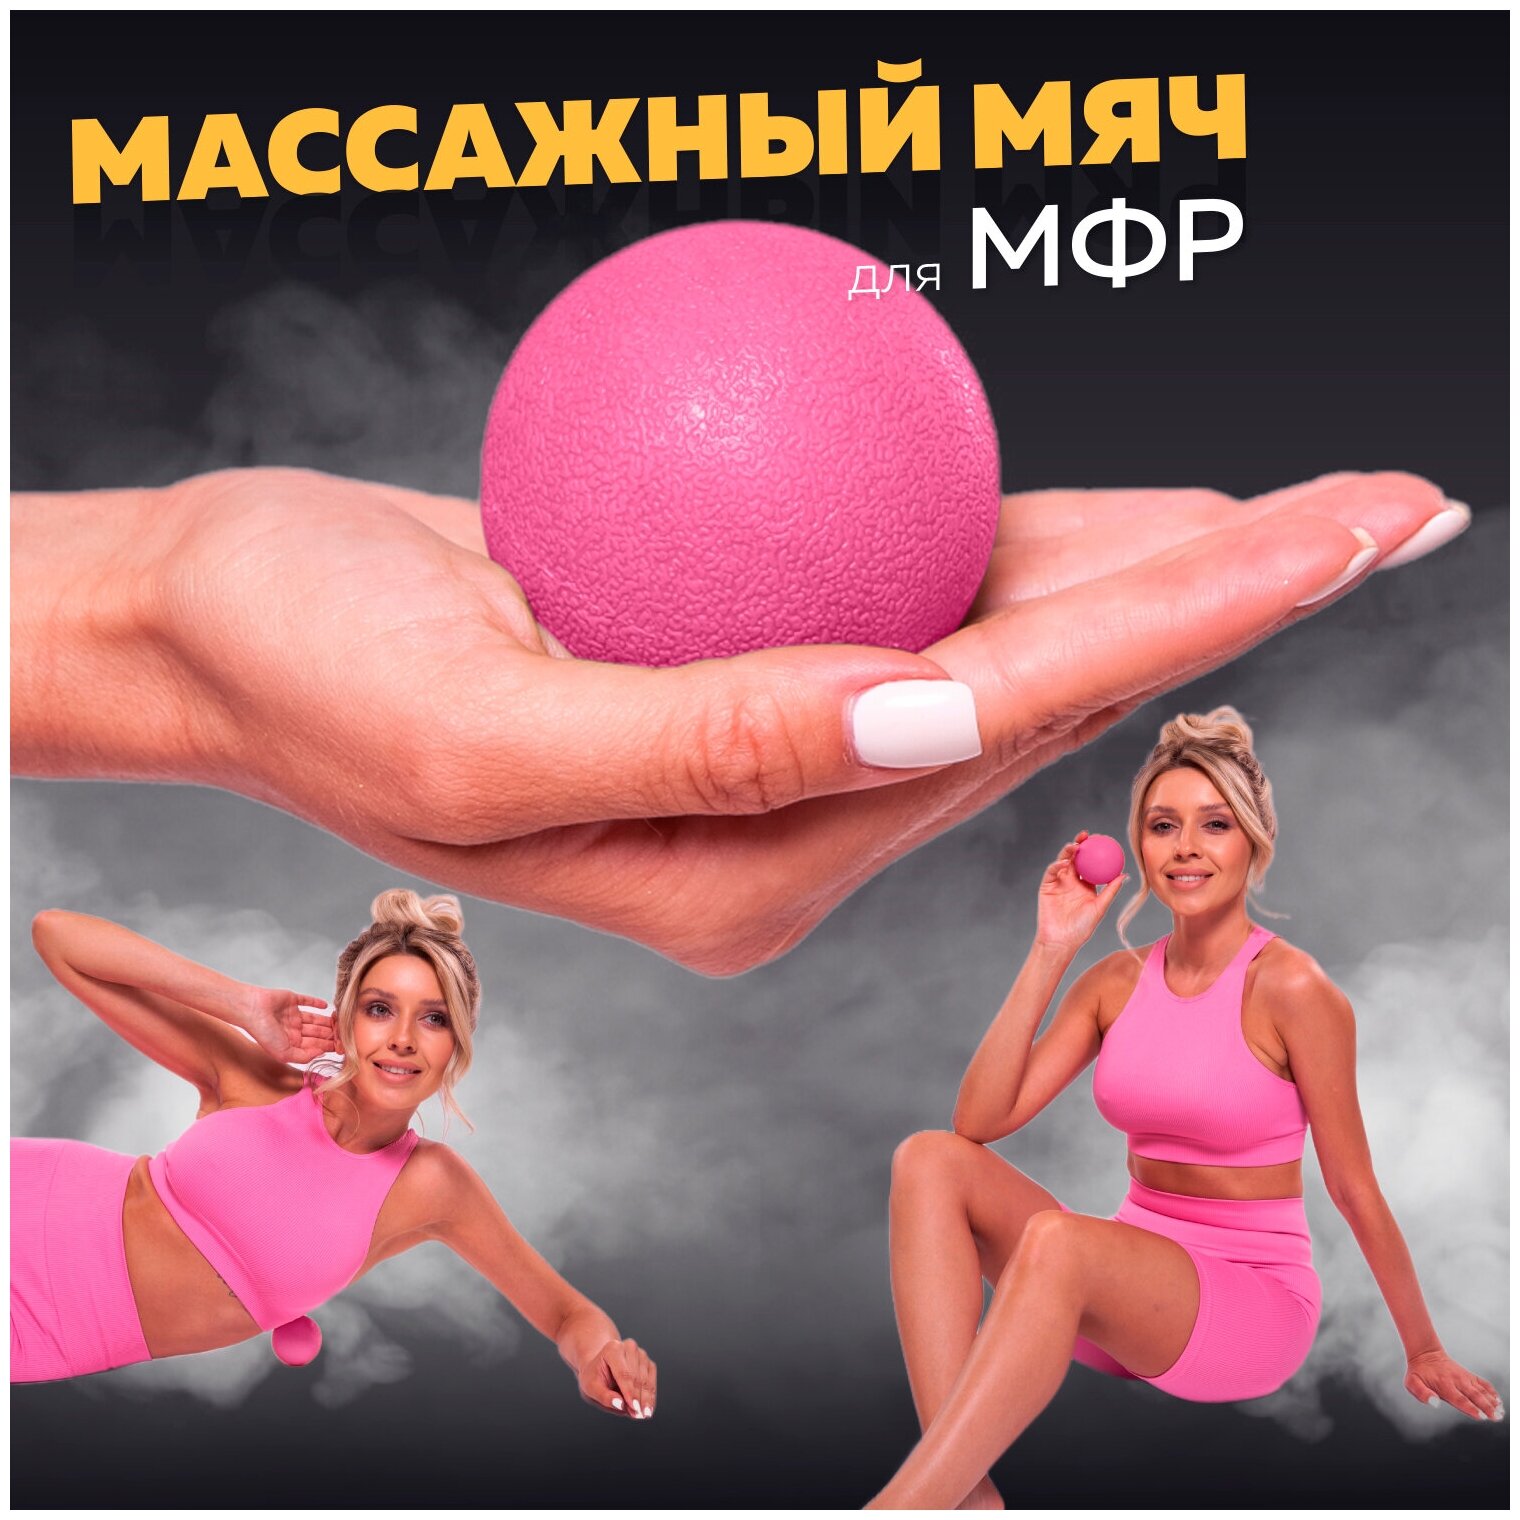 Мяч массажный для МФР, фитнеса и йоги Arushanoff, розовый (M1)